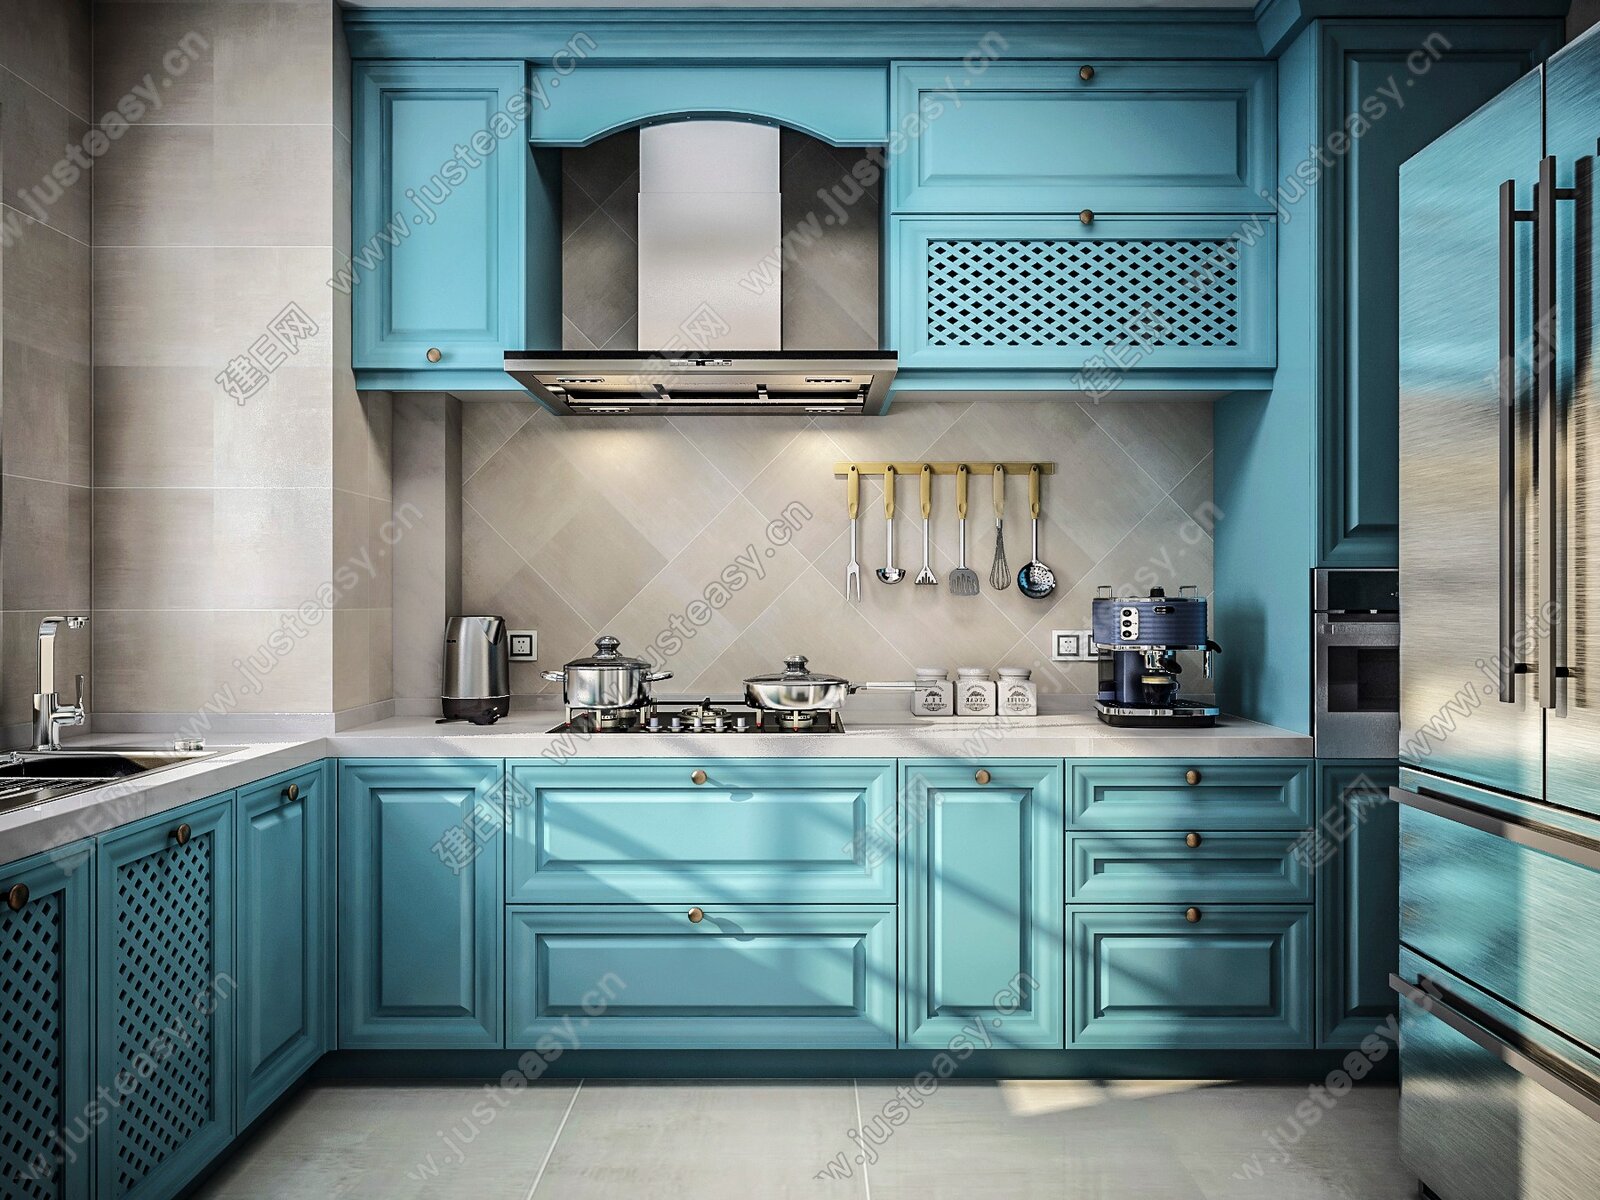 地中海风格厨房砖砌橱柜图片 – 设计本装修效果图